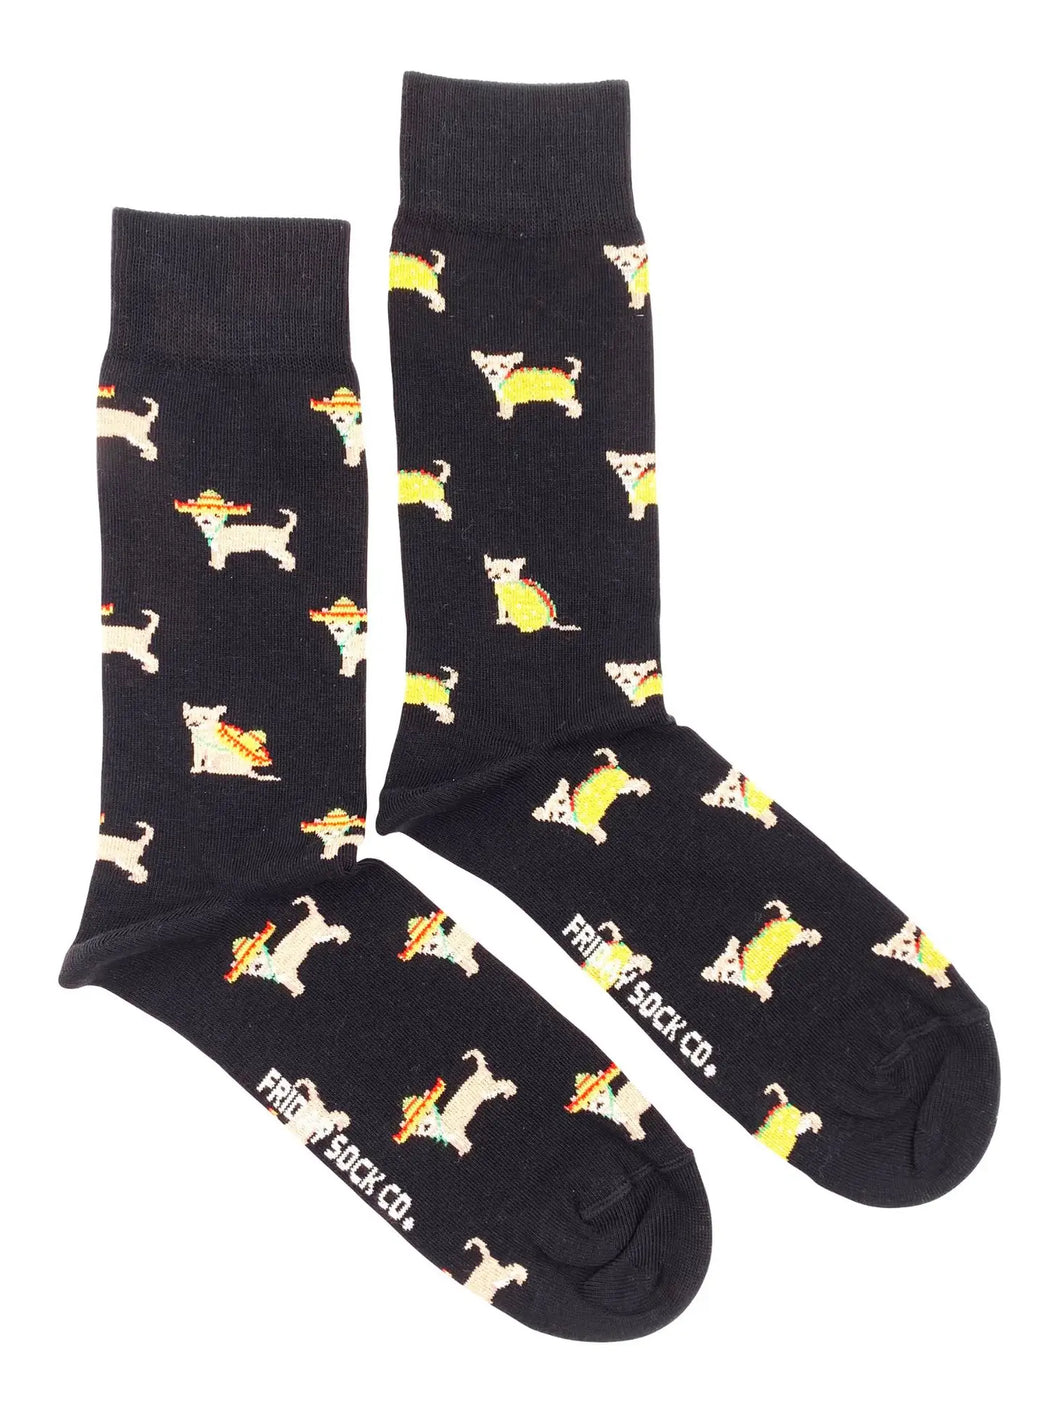 men's socks - taco dog